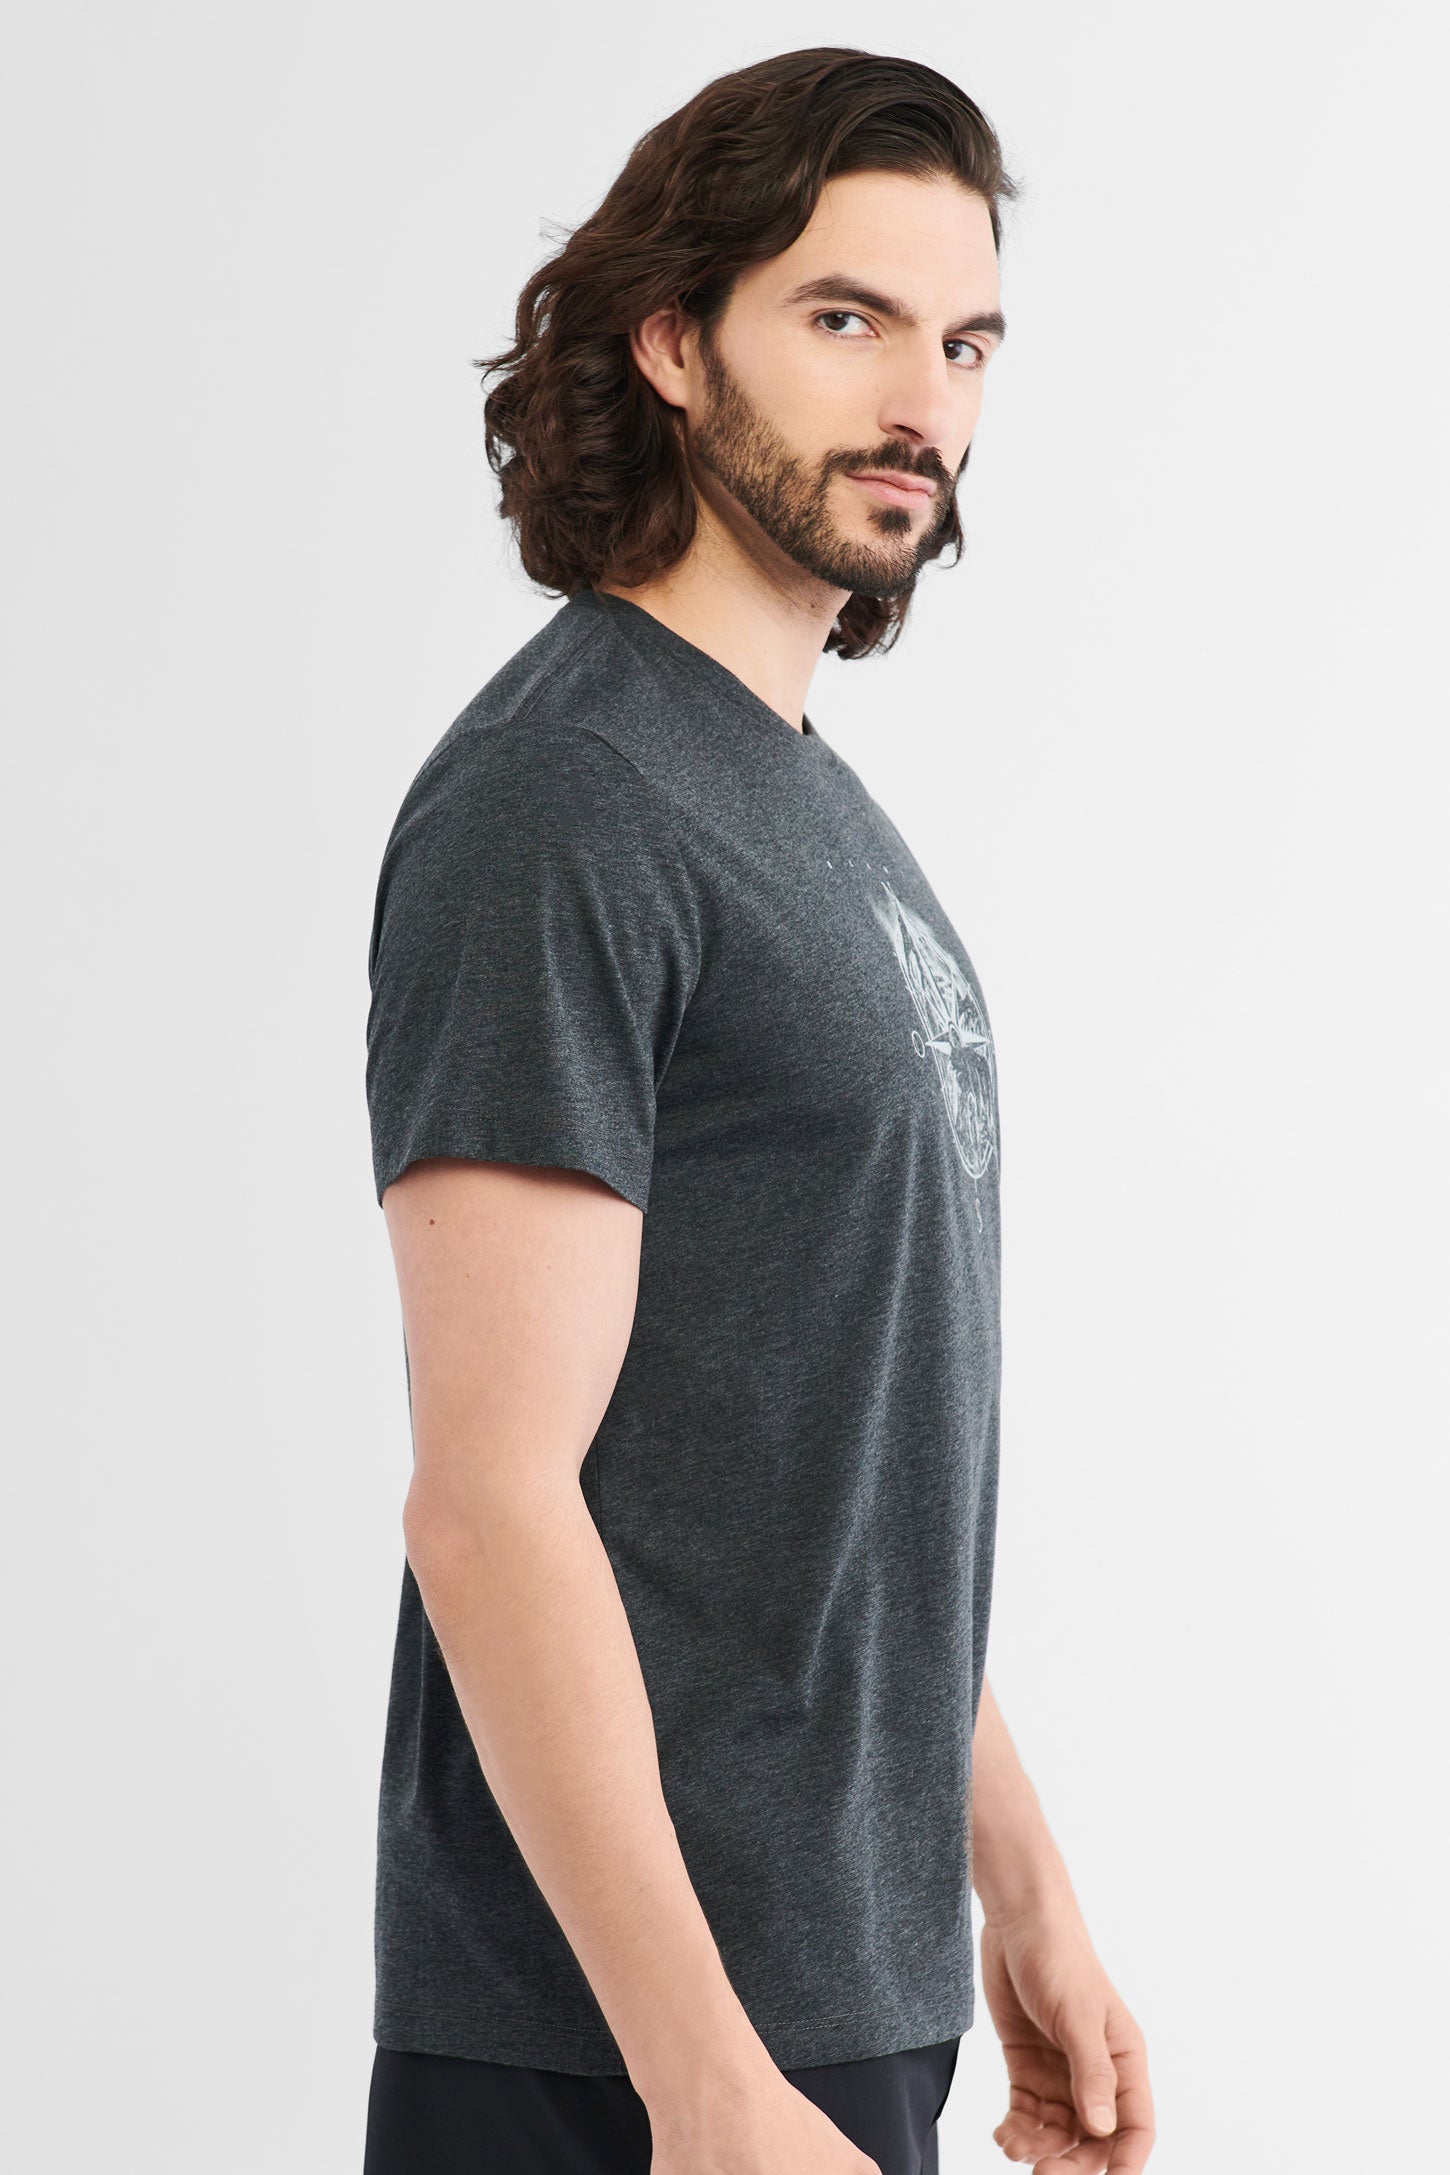 T-shirt polyester recyclé et coton bio BM, 2/50$ - Homme && GRIS